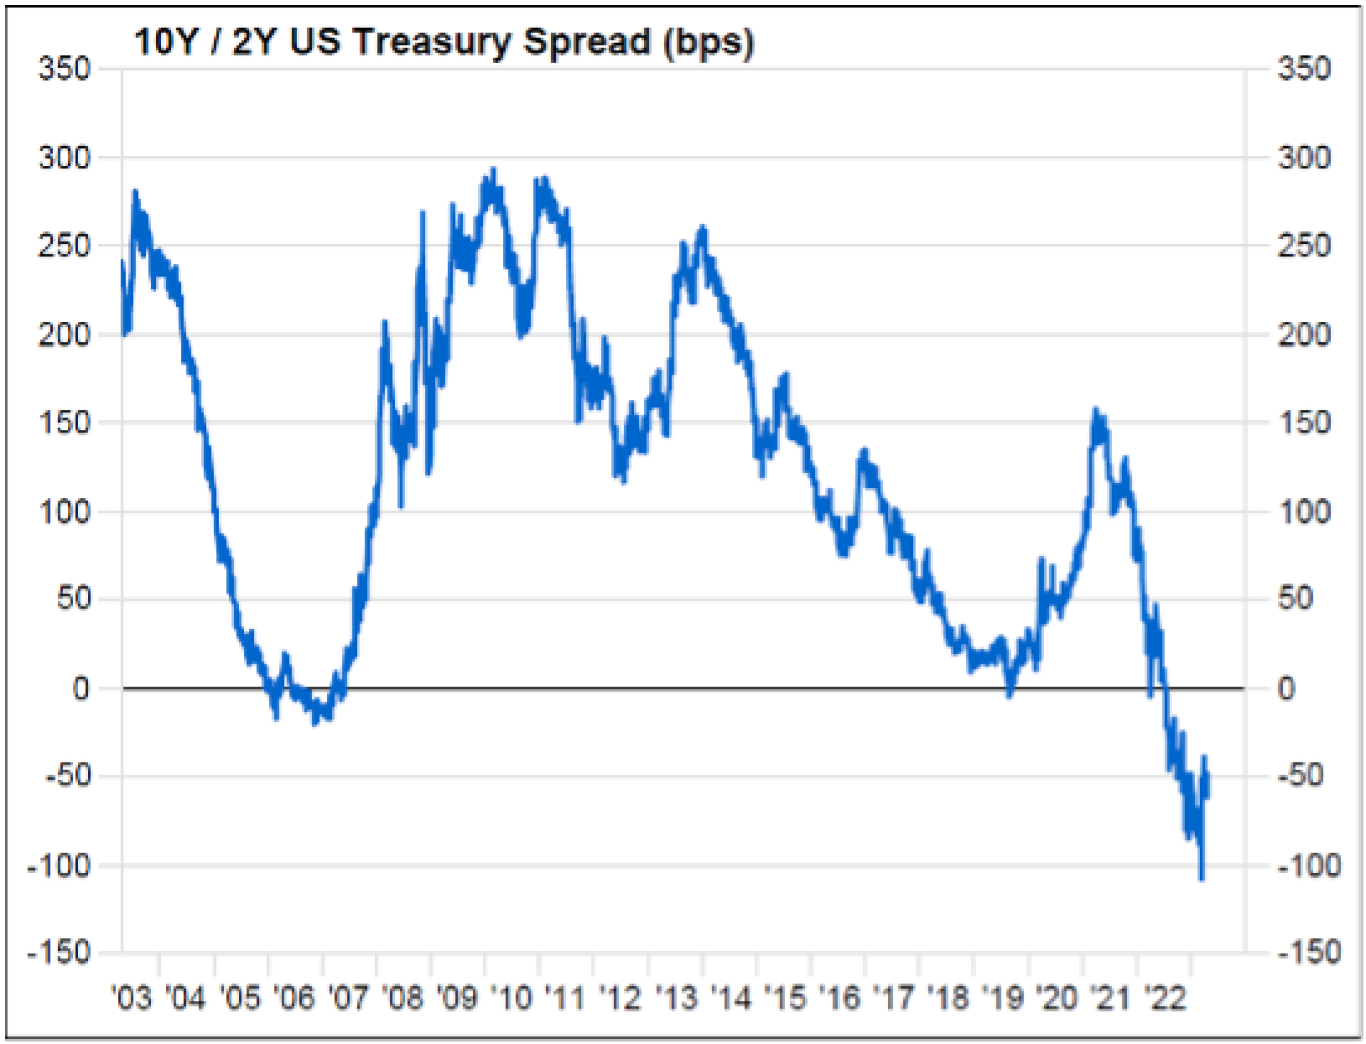 10 Yr/2 Yr Treasury Spread